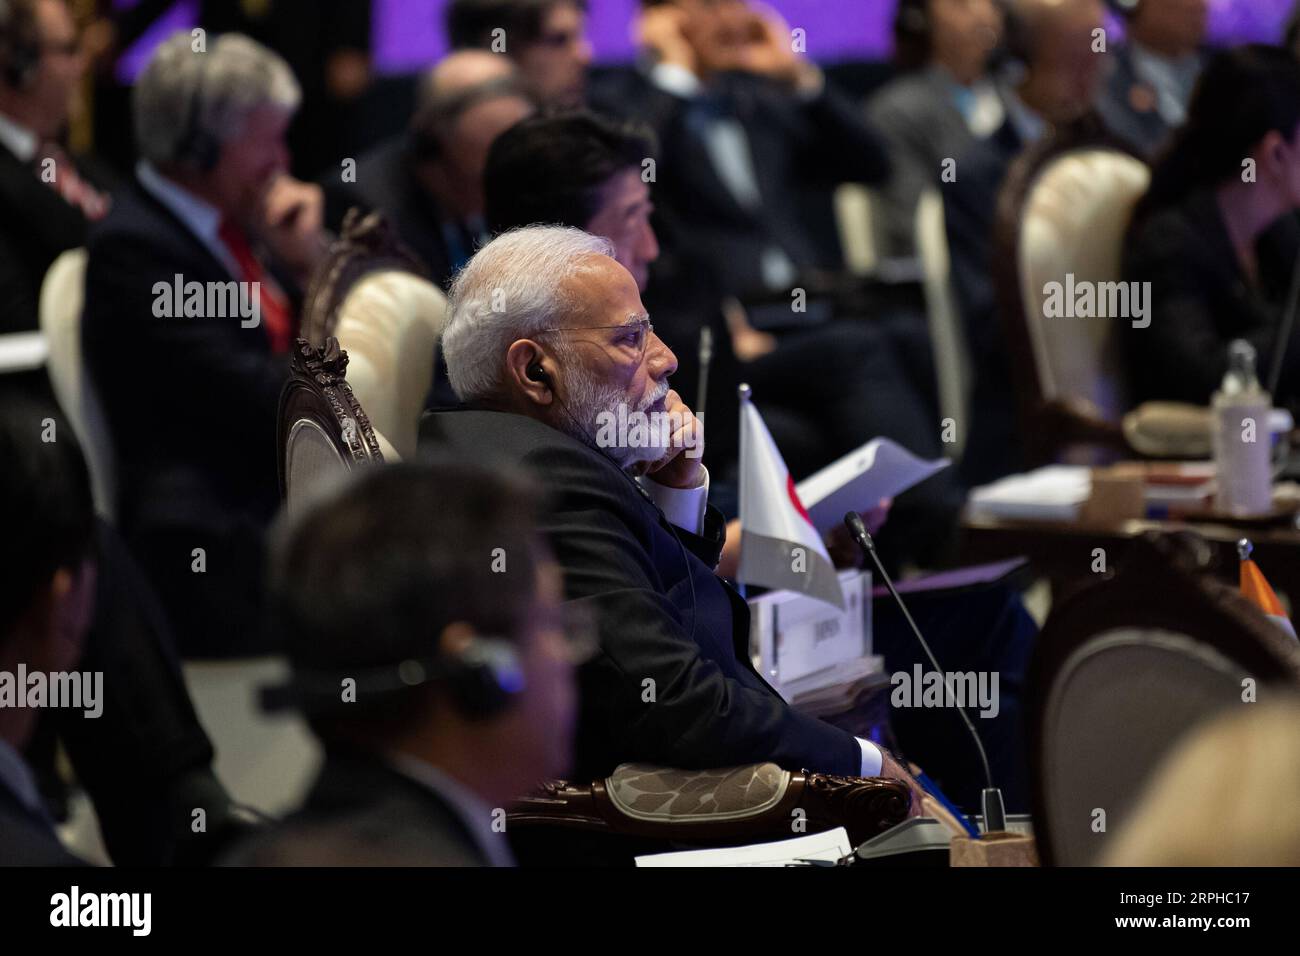 191104 -- BANGKOK, le 4 novembre 2019 -- le Premier ministre indien Narendra Modi assiste au 14e Sommet de l'Asie de l'est à Bangkok, Thaïlande, le 4 novembre 2019. Le sommet est un événement régional annuel réunissant 10 membres de l'Association des nations de l'Asie du Sud-est ASEAN, ainsi que la Chine, le Japon, la Corée du Sud, l'Inde, l'Australie, nouvelle-Zélande, Russie et États-Unis. SOMMET THAÏLANDE-BANGKOK-ASIE DE L'EST ZhuxWei PUBLICATIONxNOTxINxCHN Banque D'Images